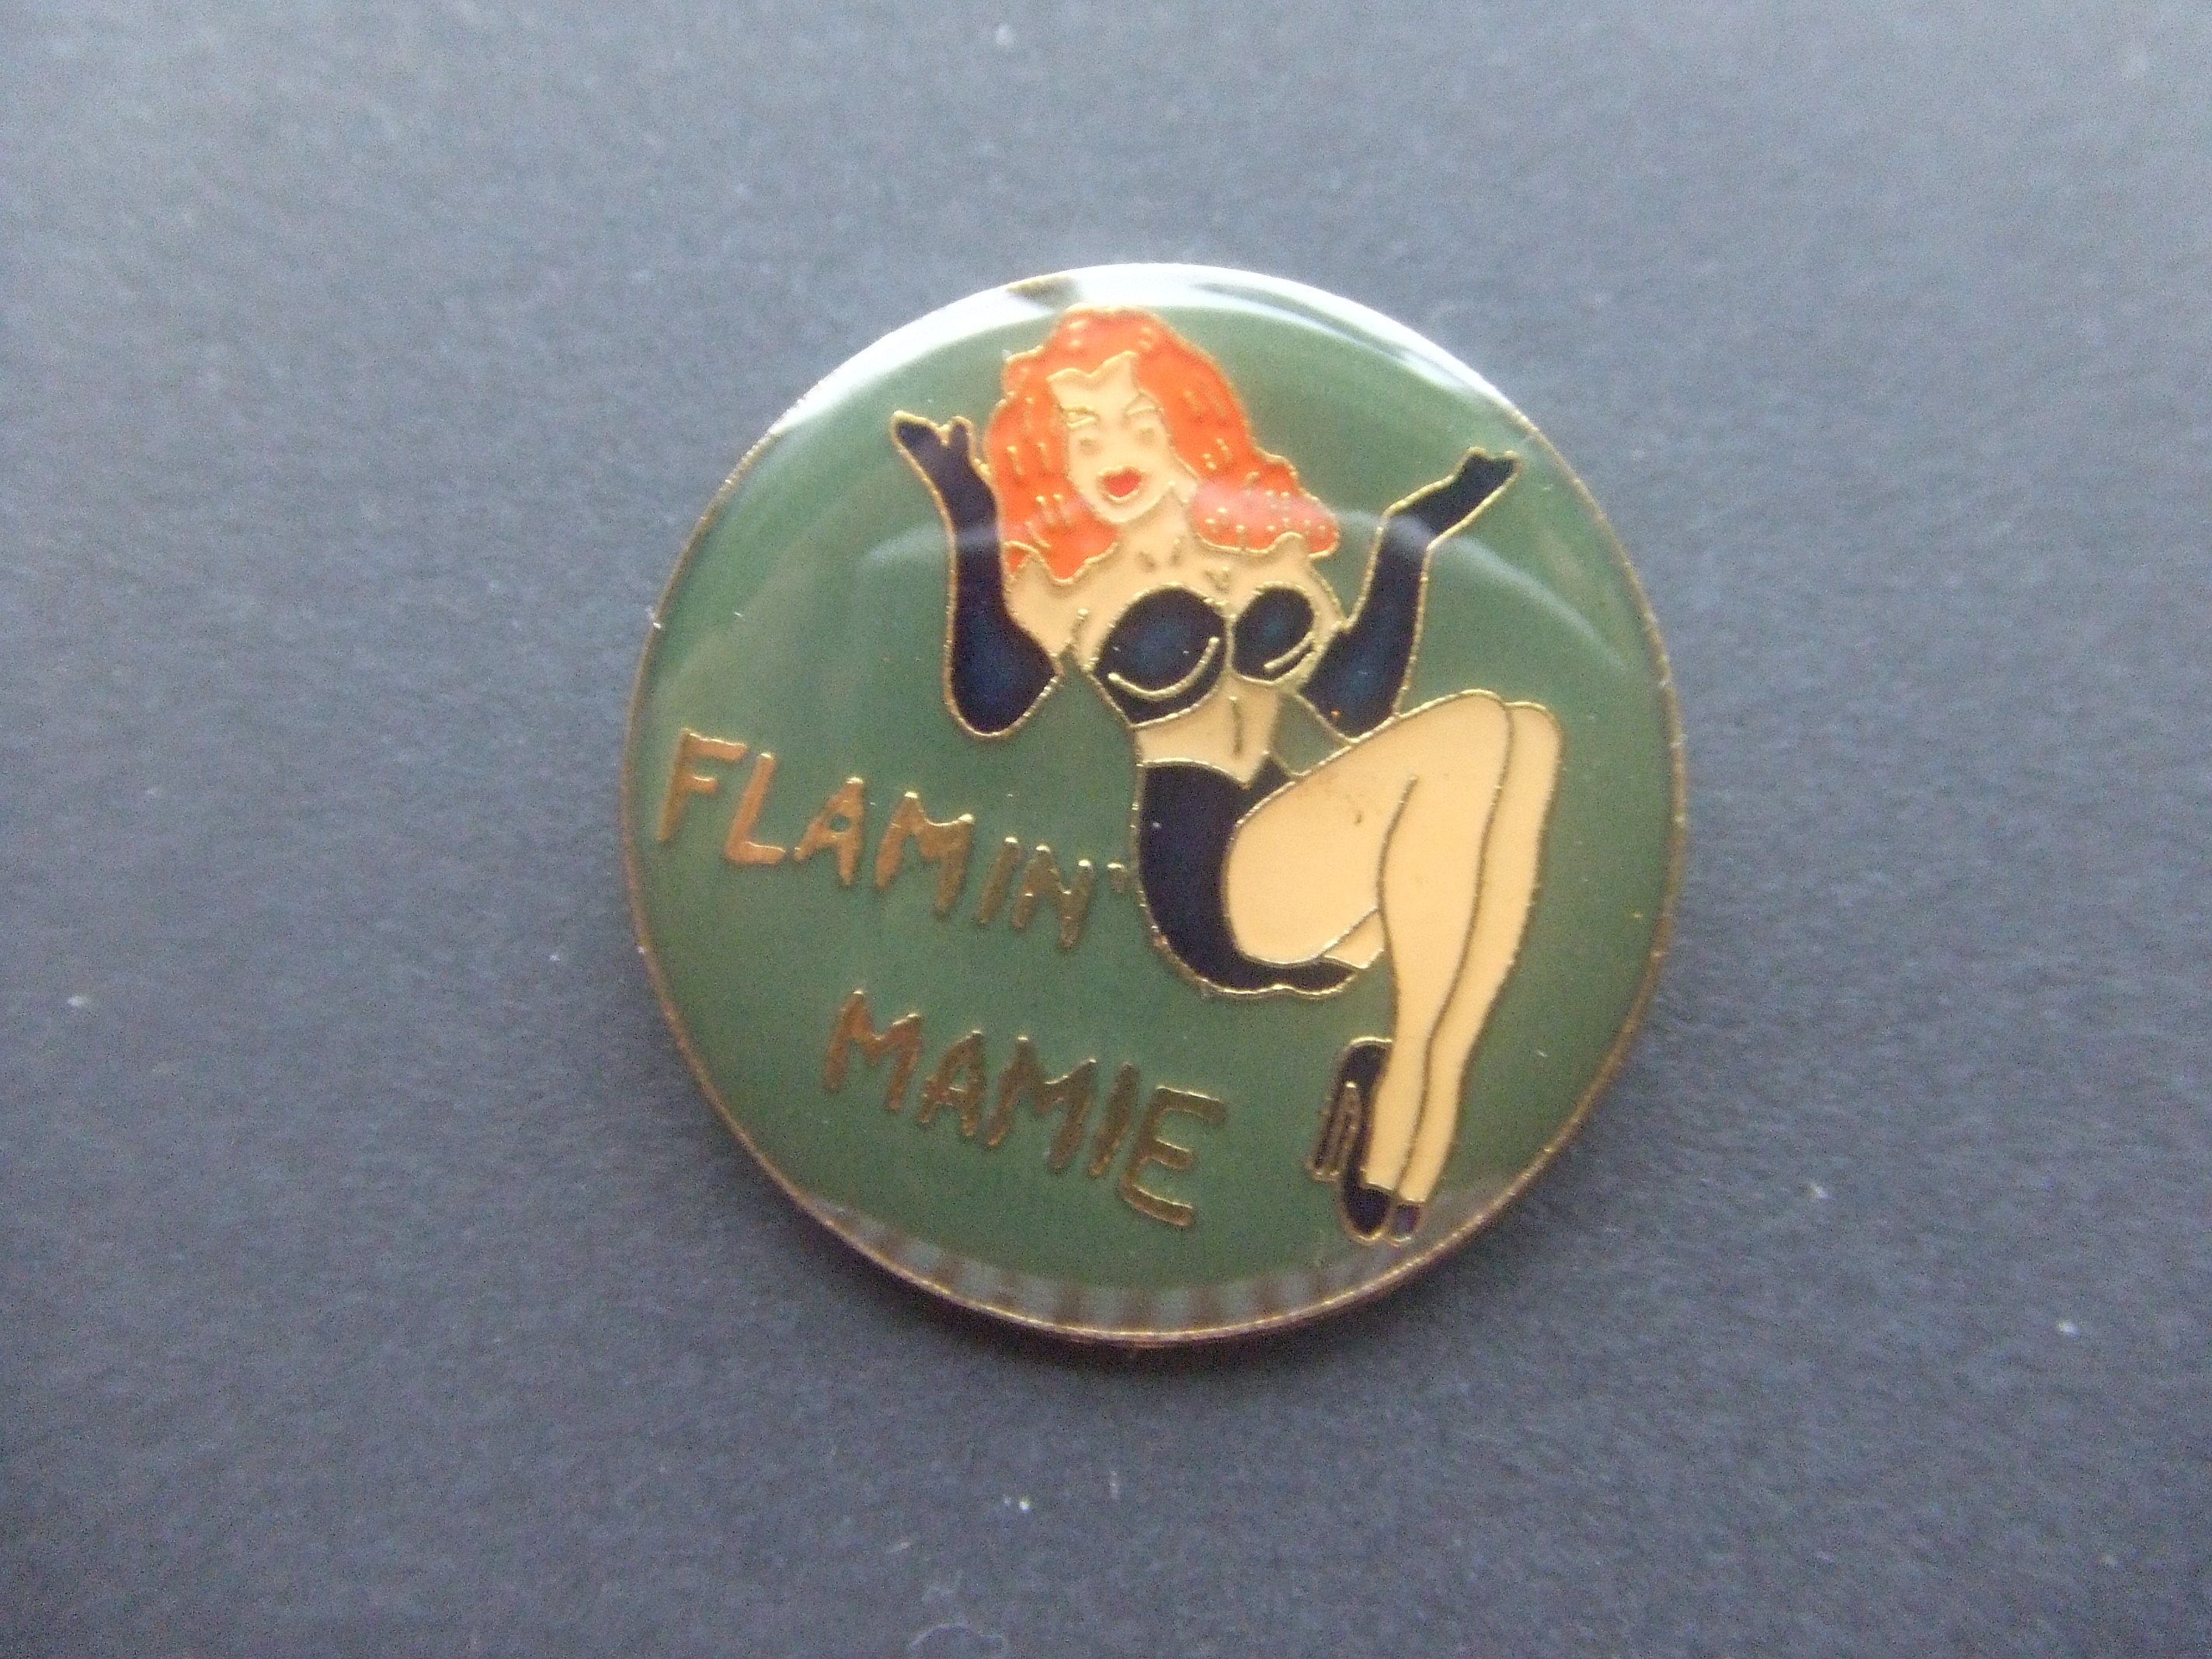 Pin-up girl Flamin Mamie